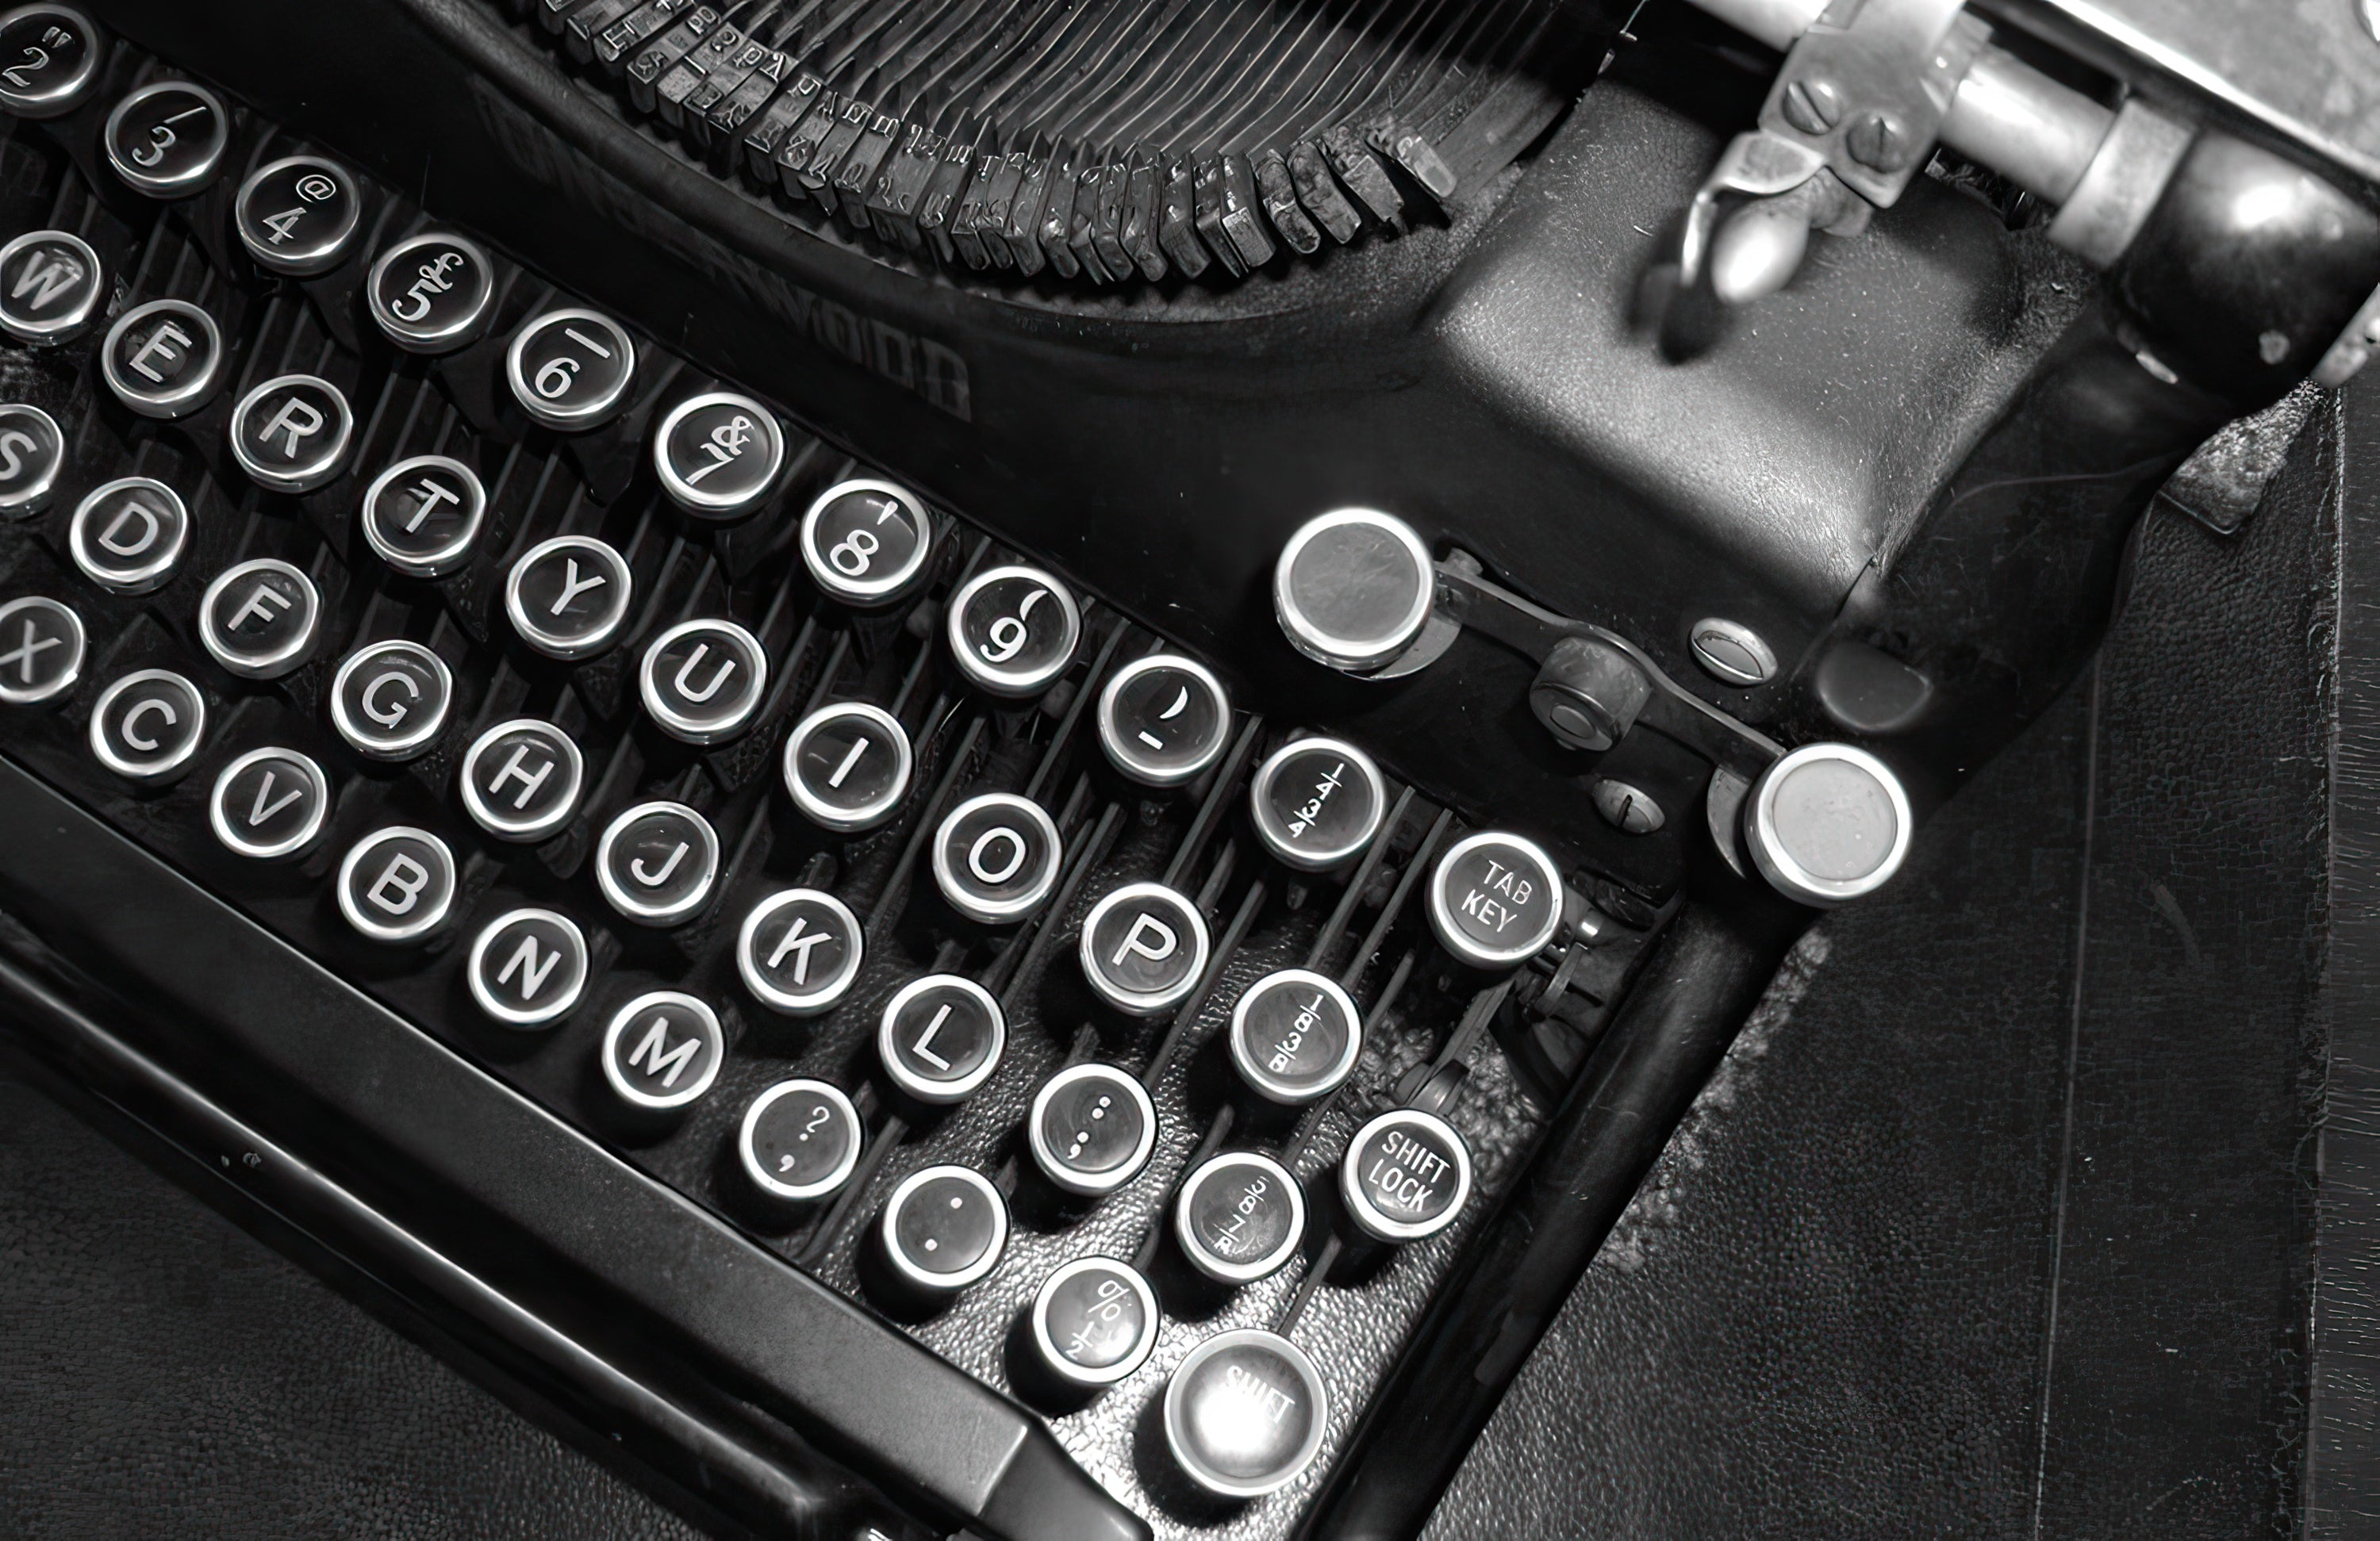 2023 Adapted Story Showcase - Image of vintage typewriter